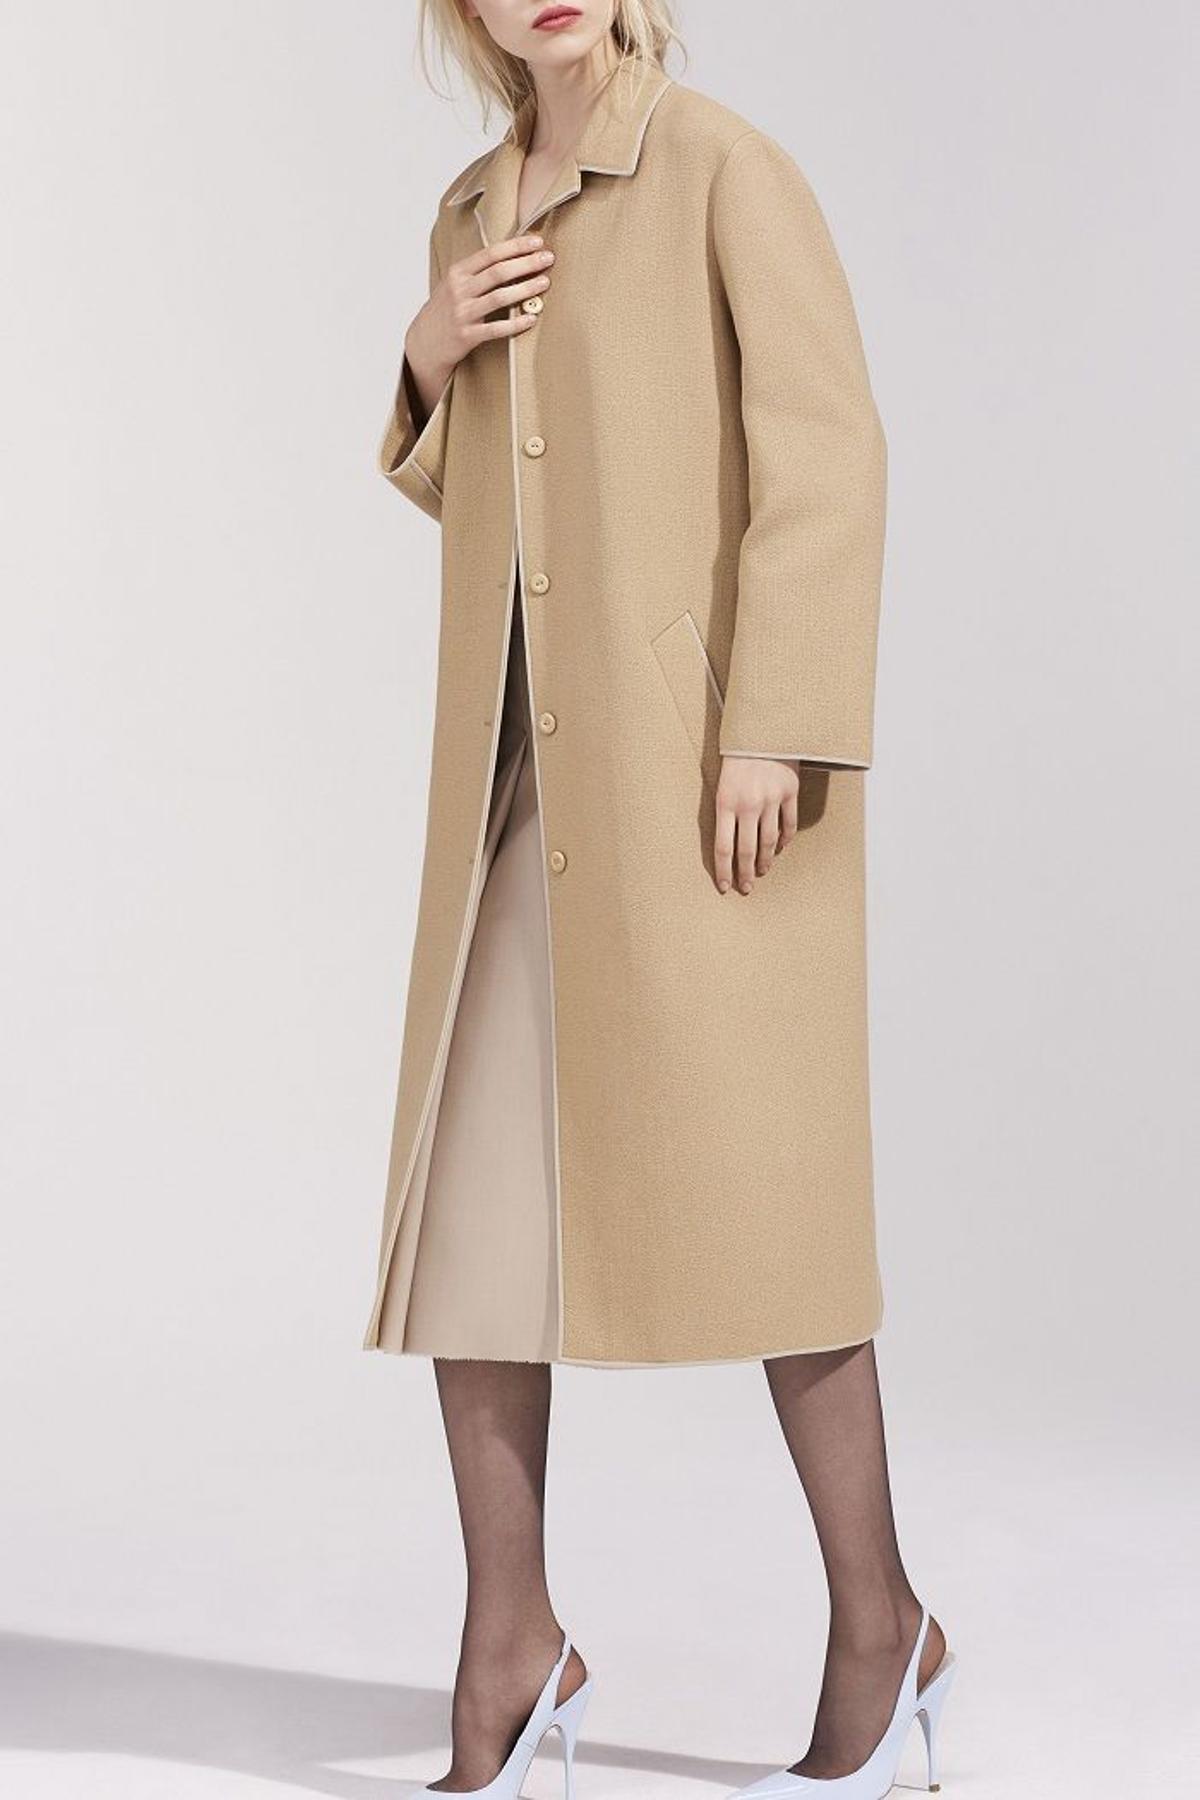 Nina Ricci colección primavera 2016, abrigo minimalista